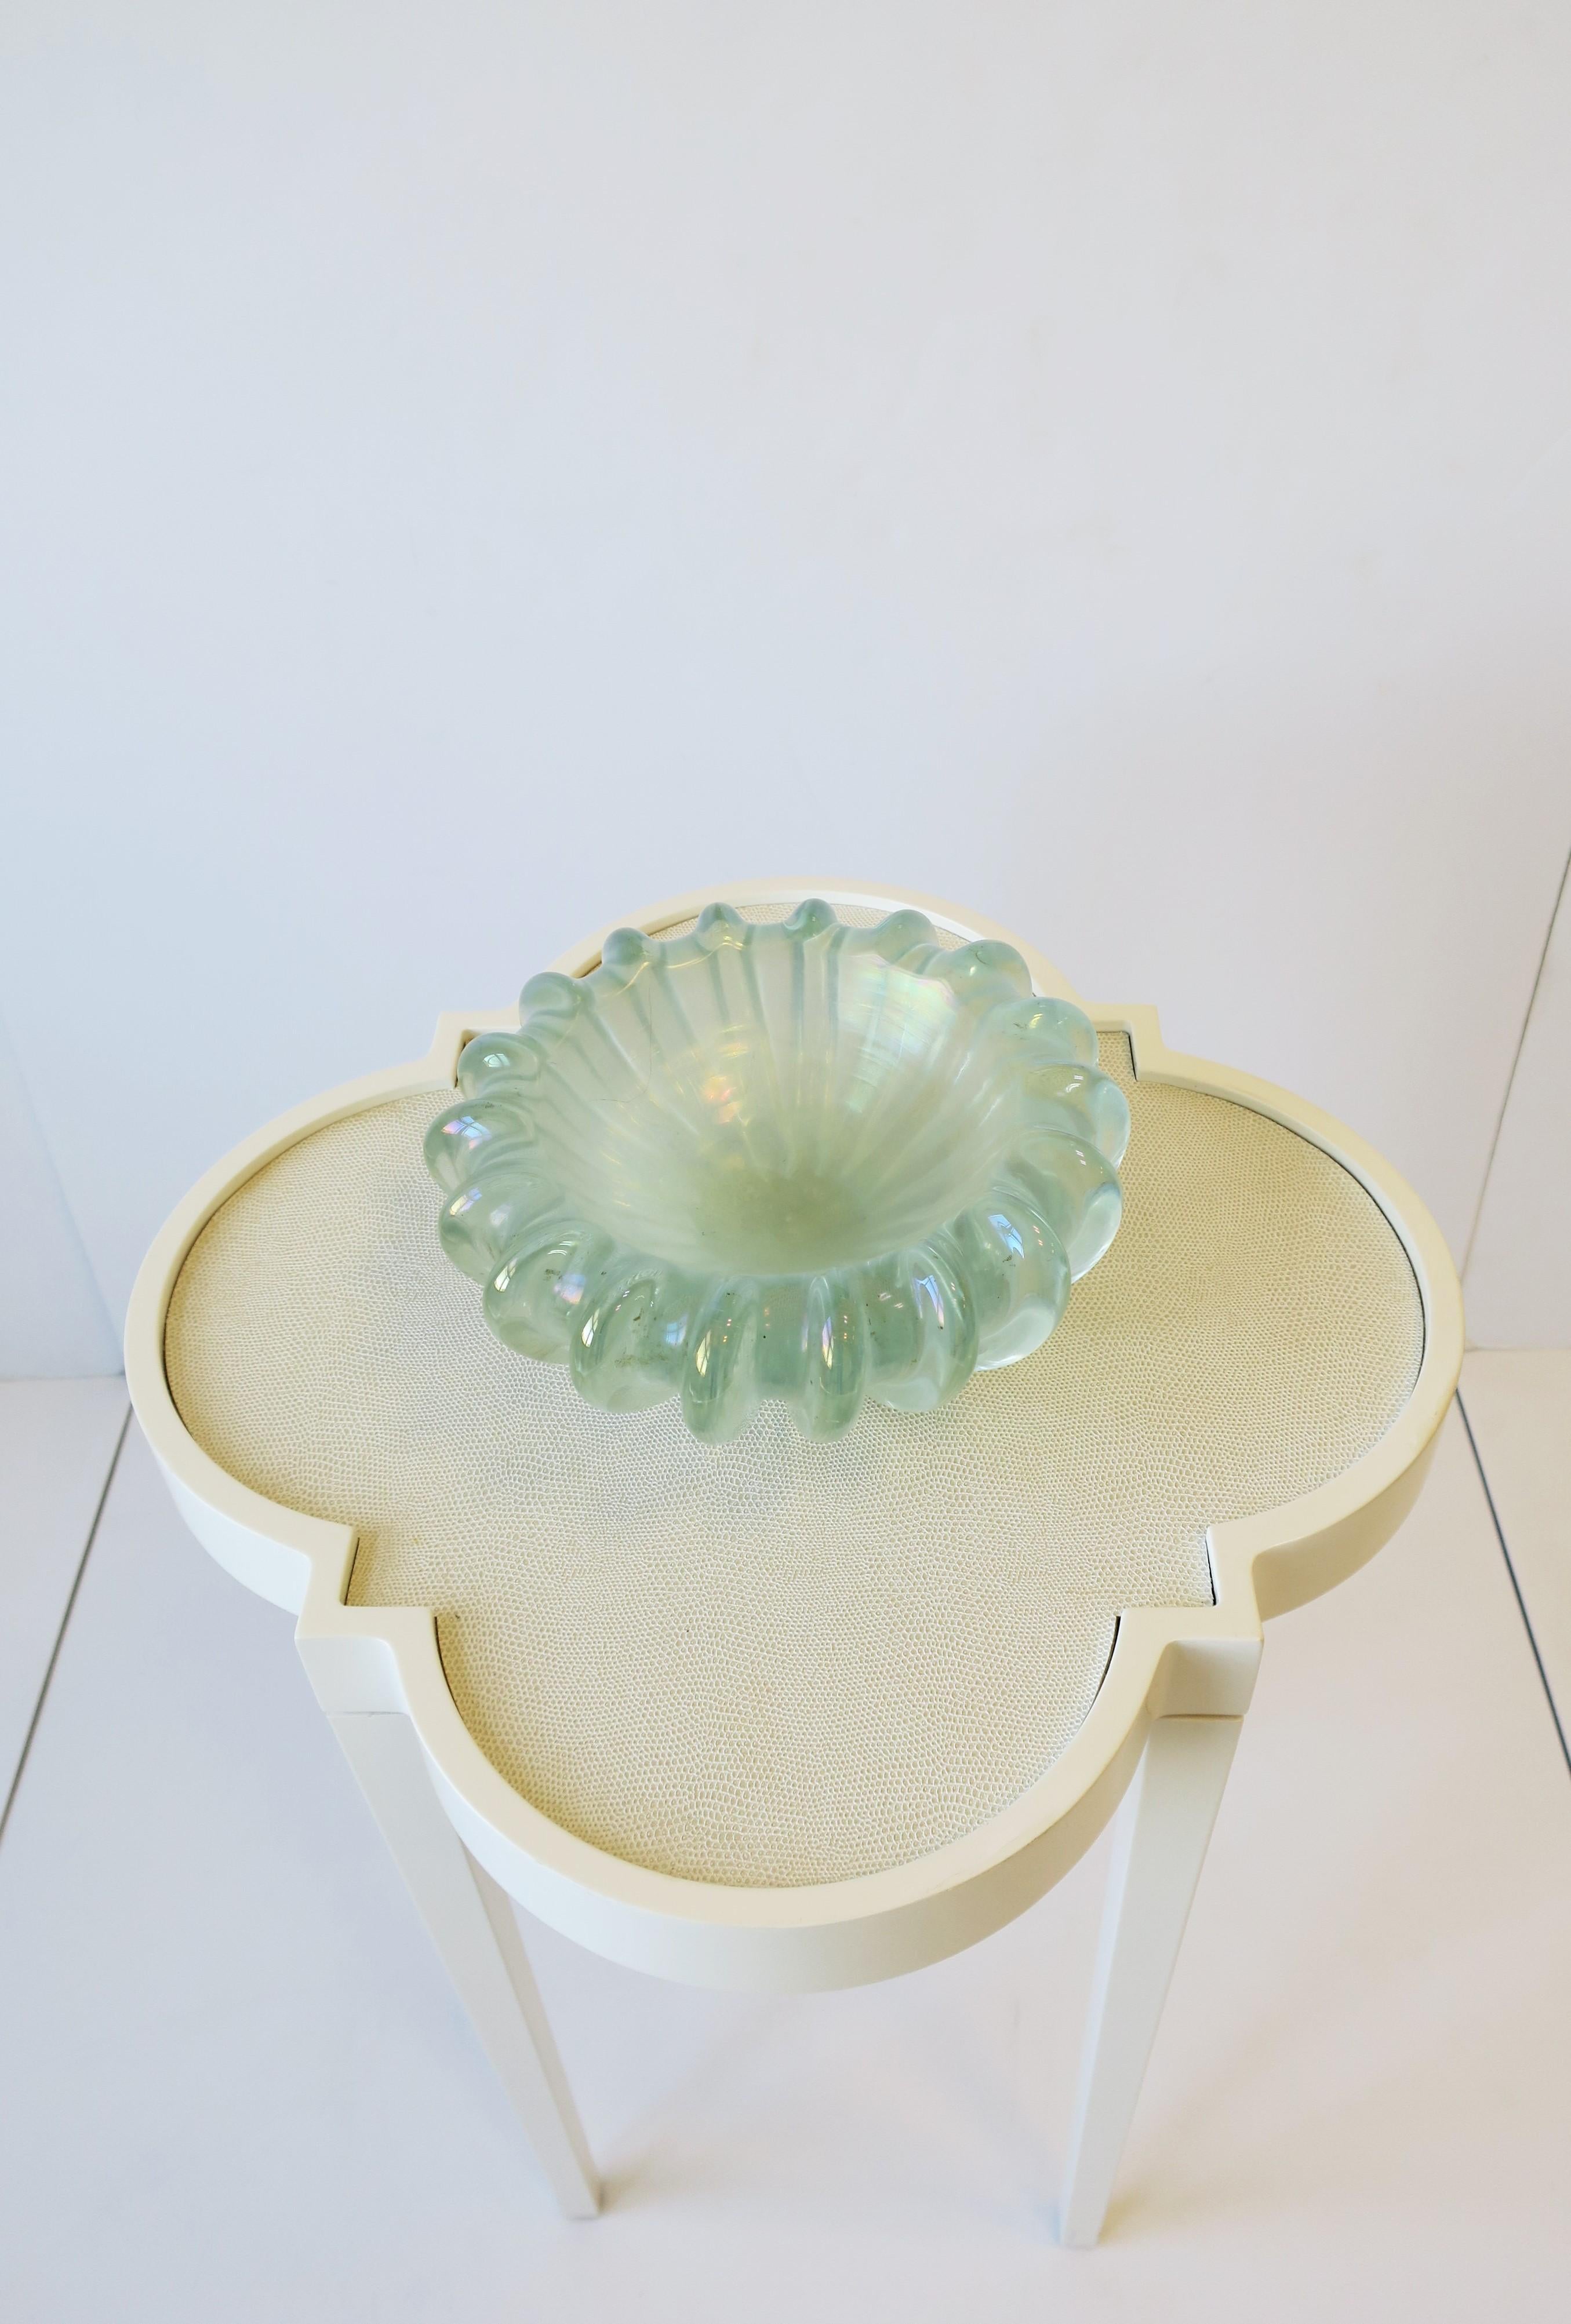 Italian Murano Iridescent Round Art Glass Bowl For Sale 3